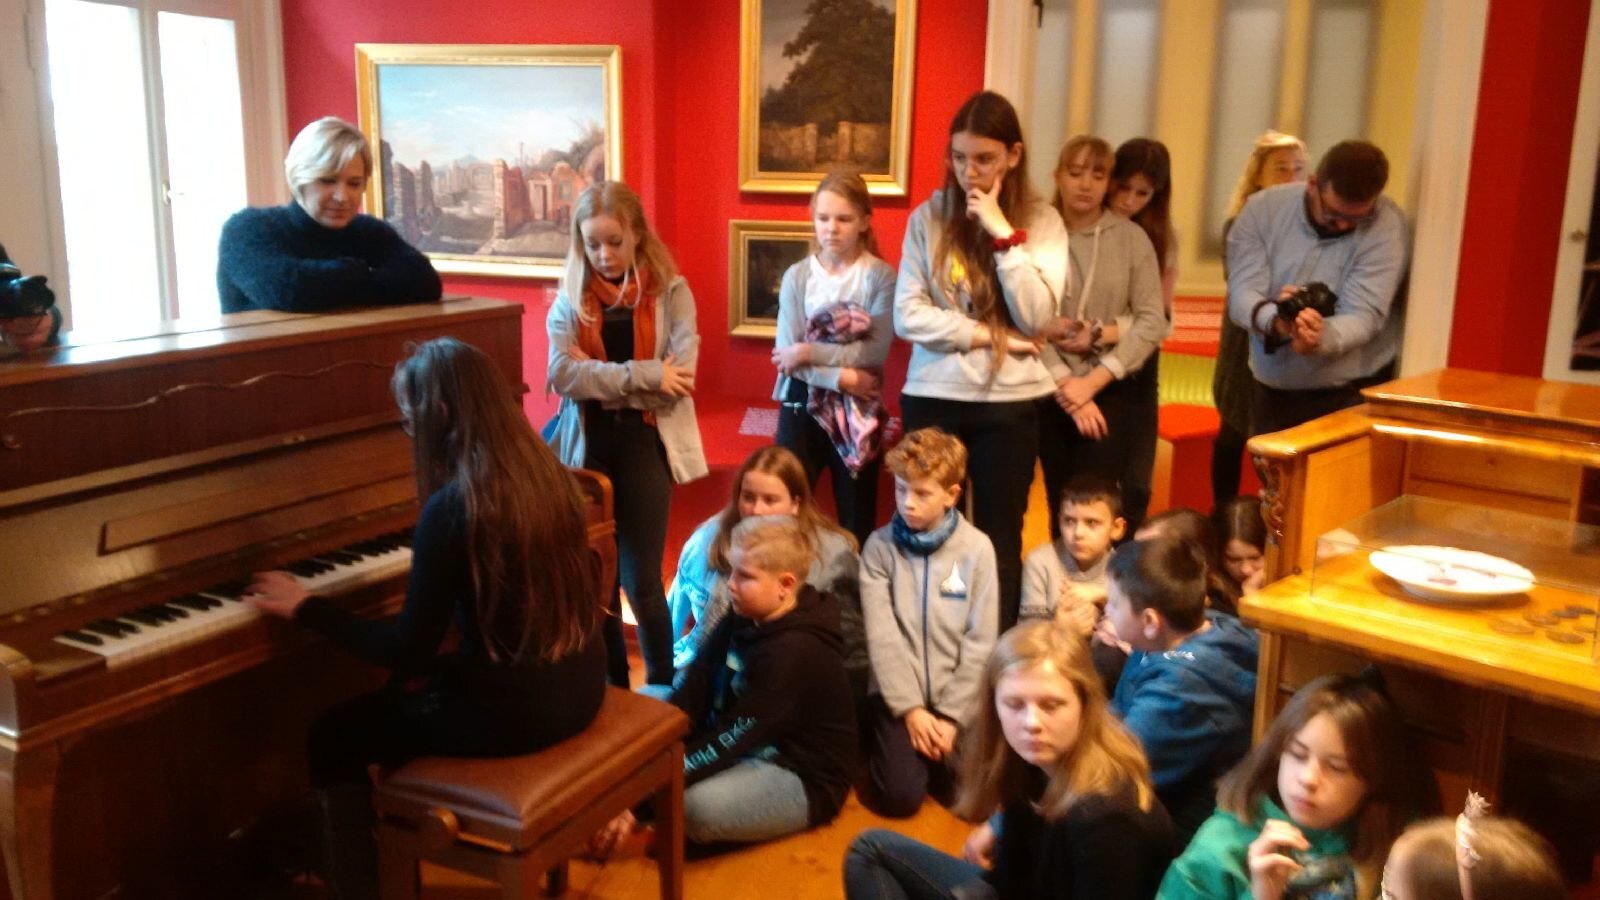 Mädchen mit langem braunem Haar spielt Klavier, Erwachsene und Kinder stehen um sie herum oder sitzen auf dem Fußboden. An den roten Wänden hängen Bilder im Goldrahmen. 